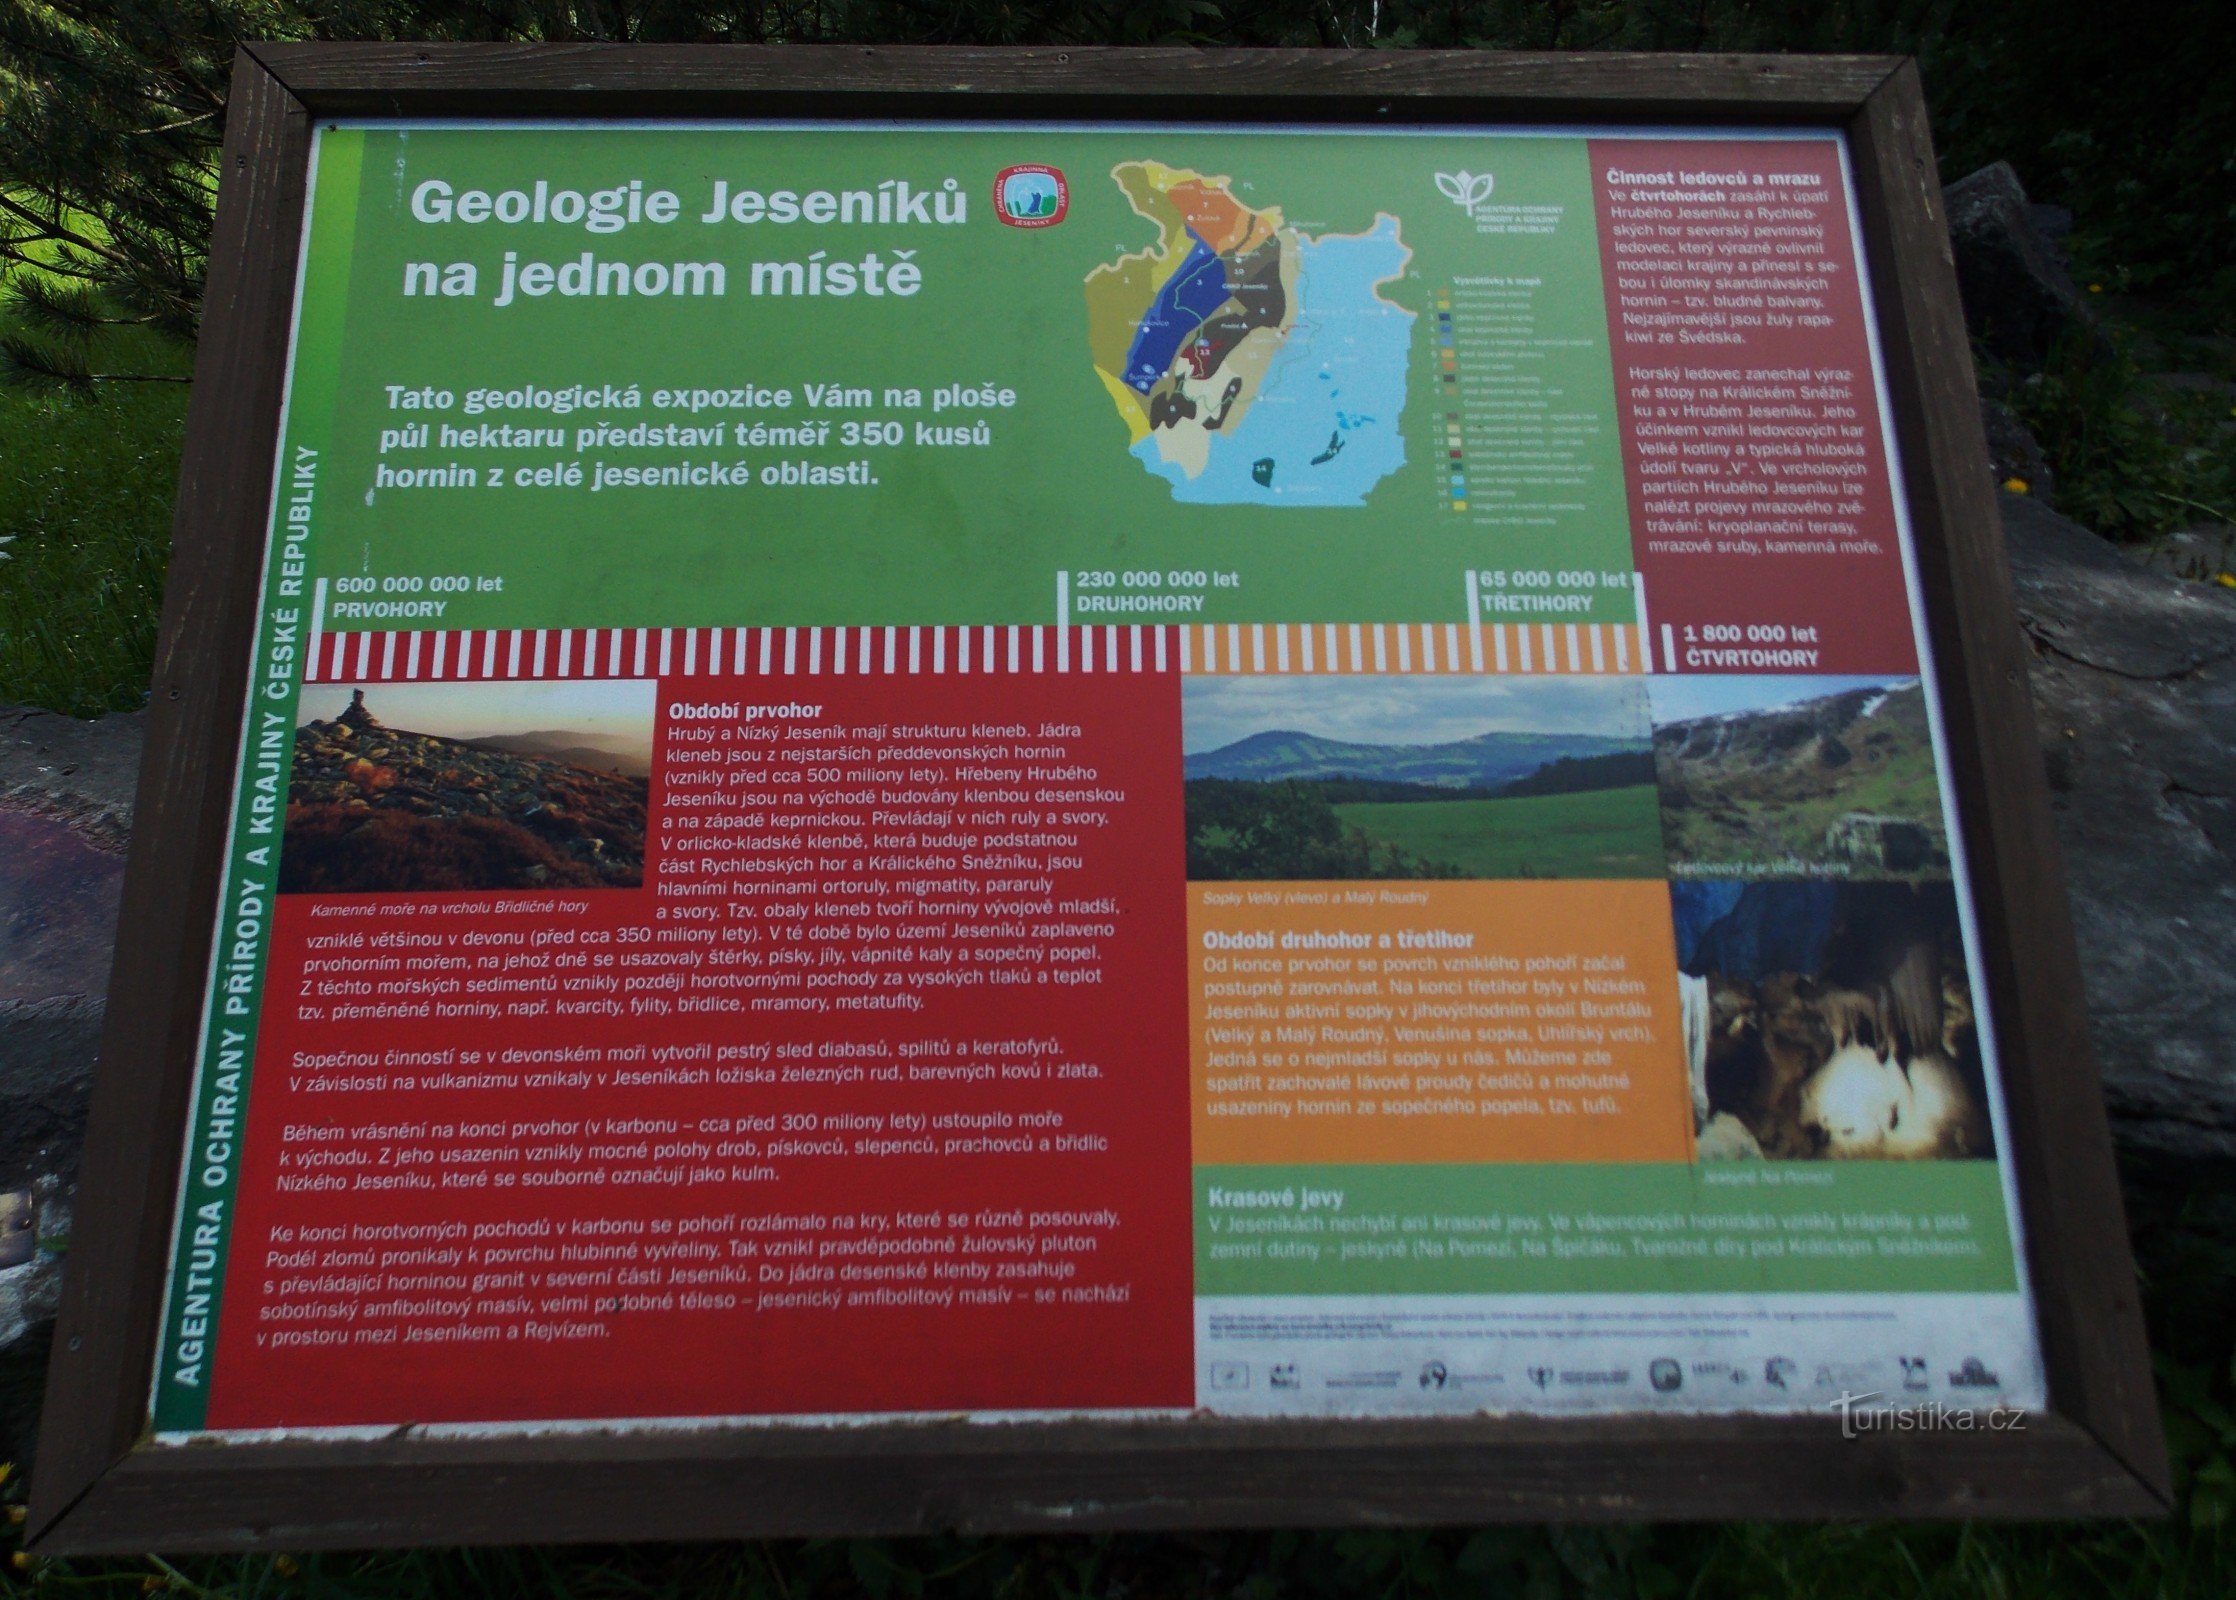 Un punto interesante en Karlová Studánka - una exposición geológica de piedras